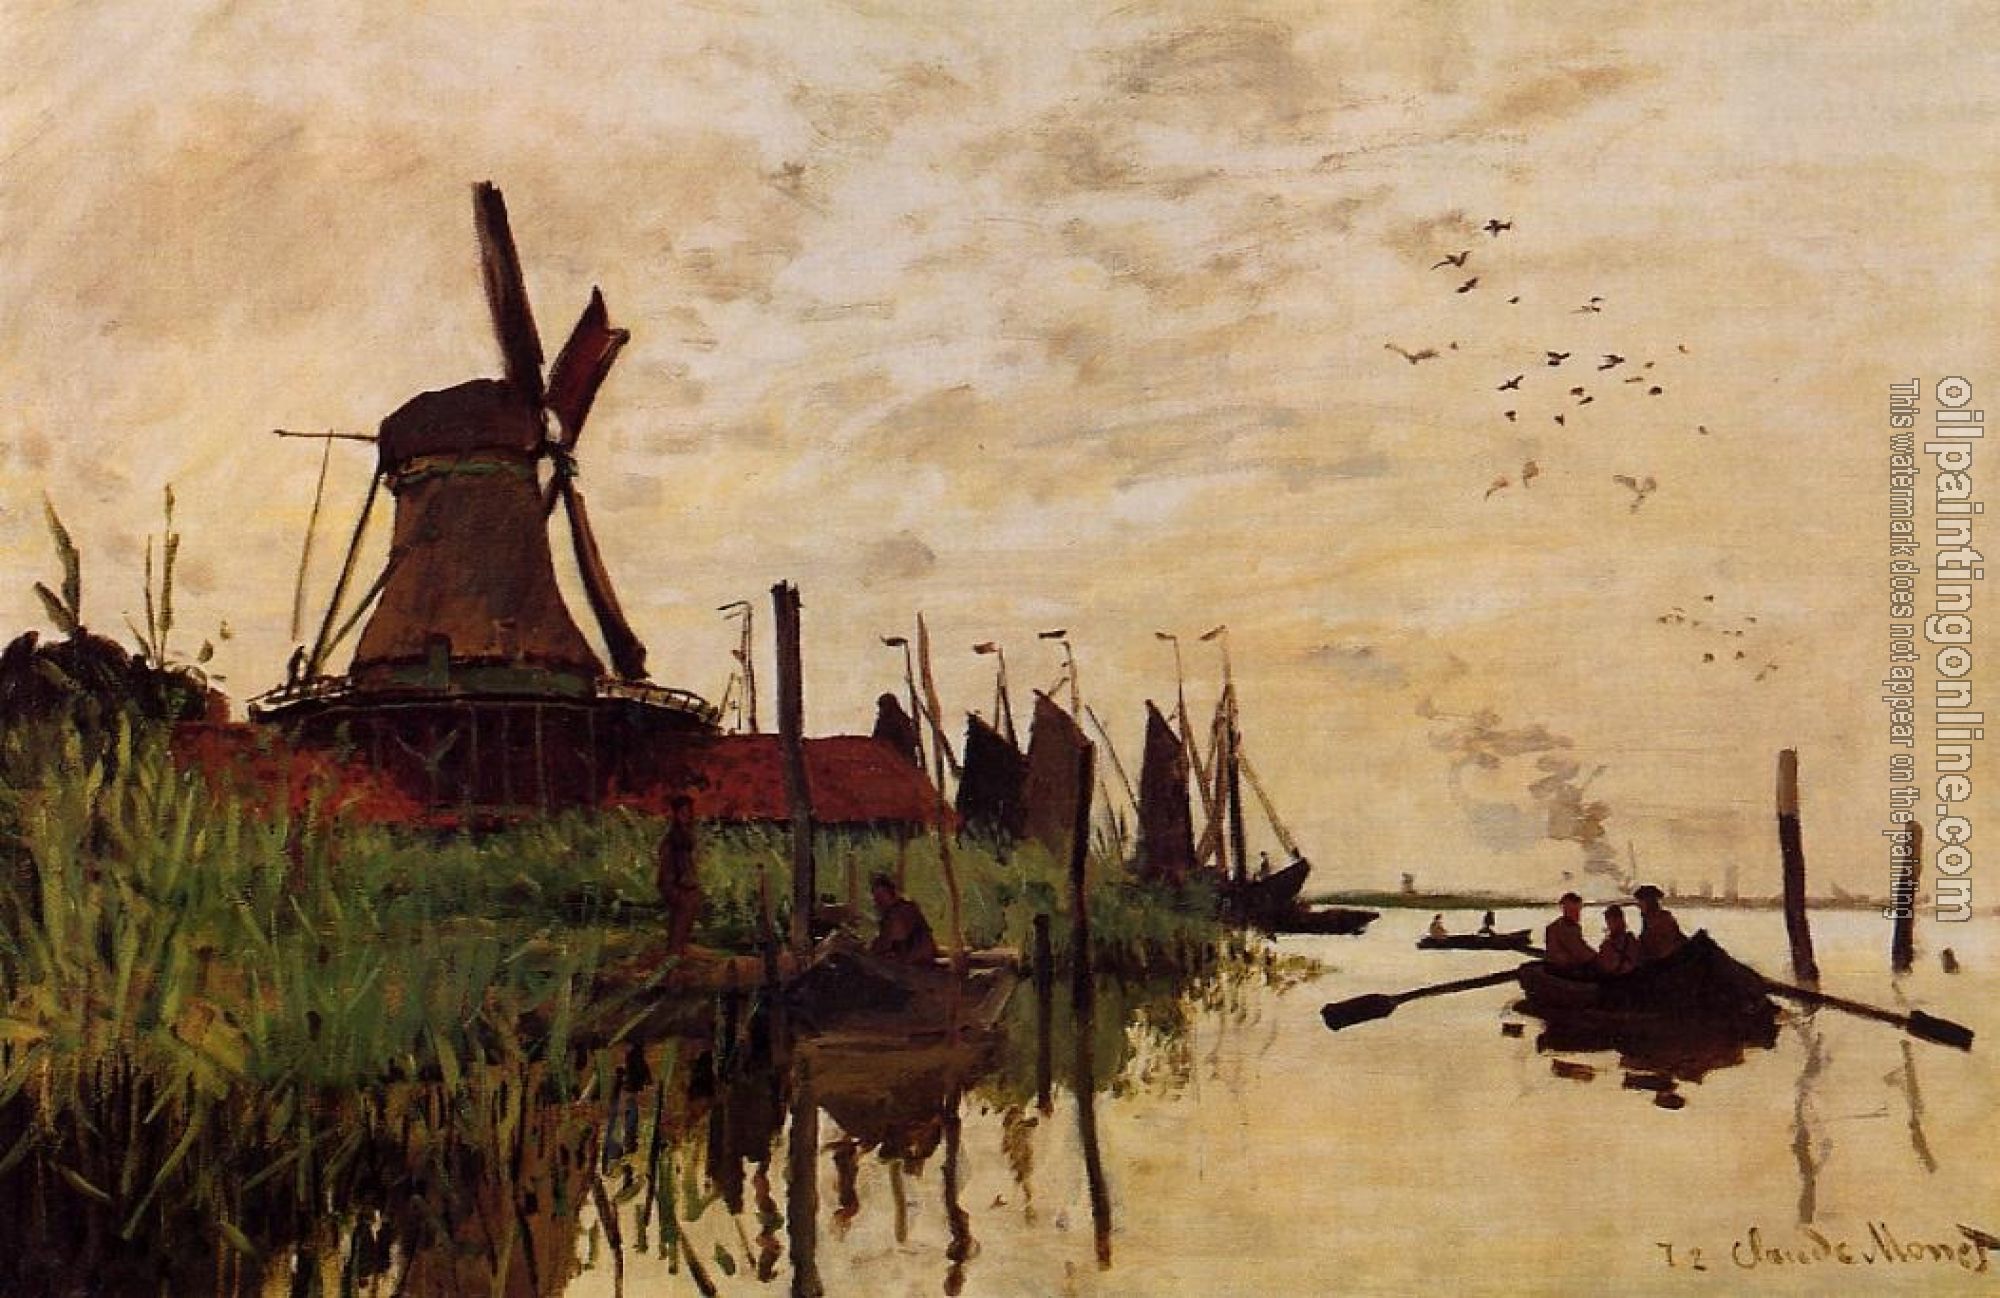 Monet, Claude Oscar - Windmill at Zaandam